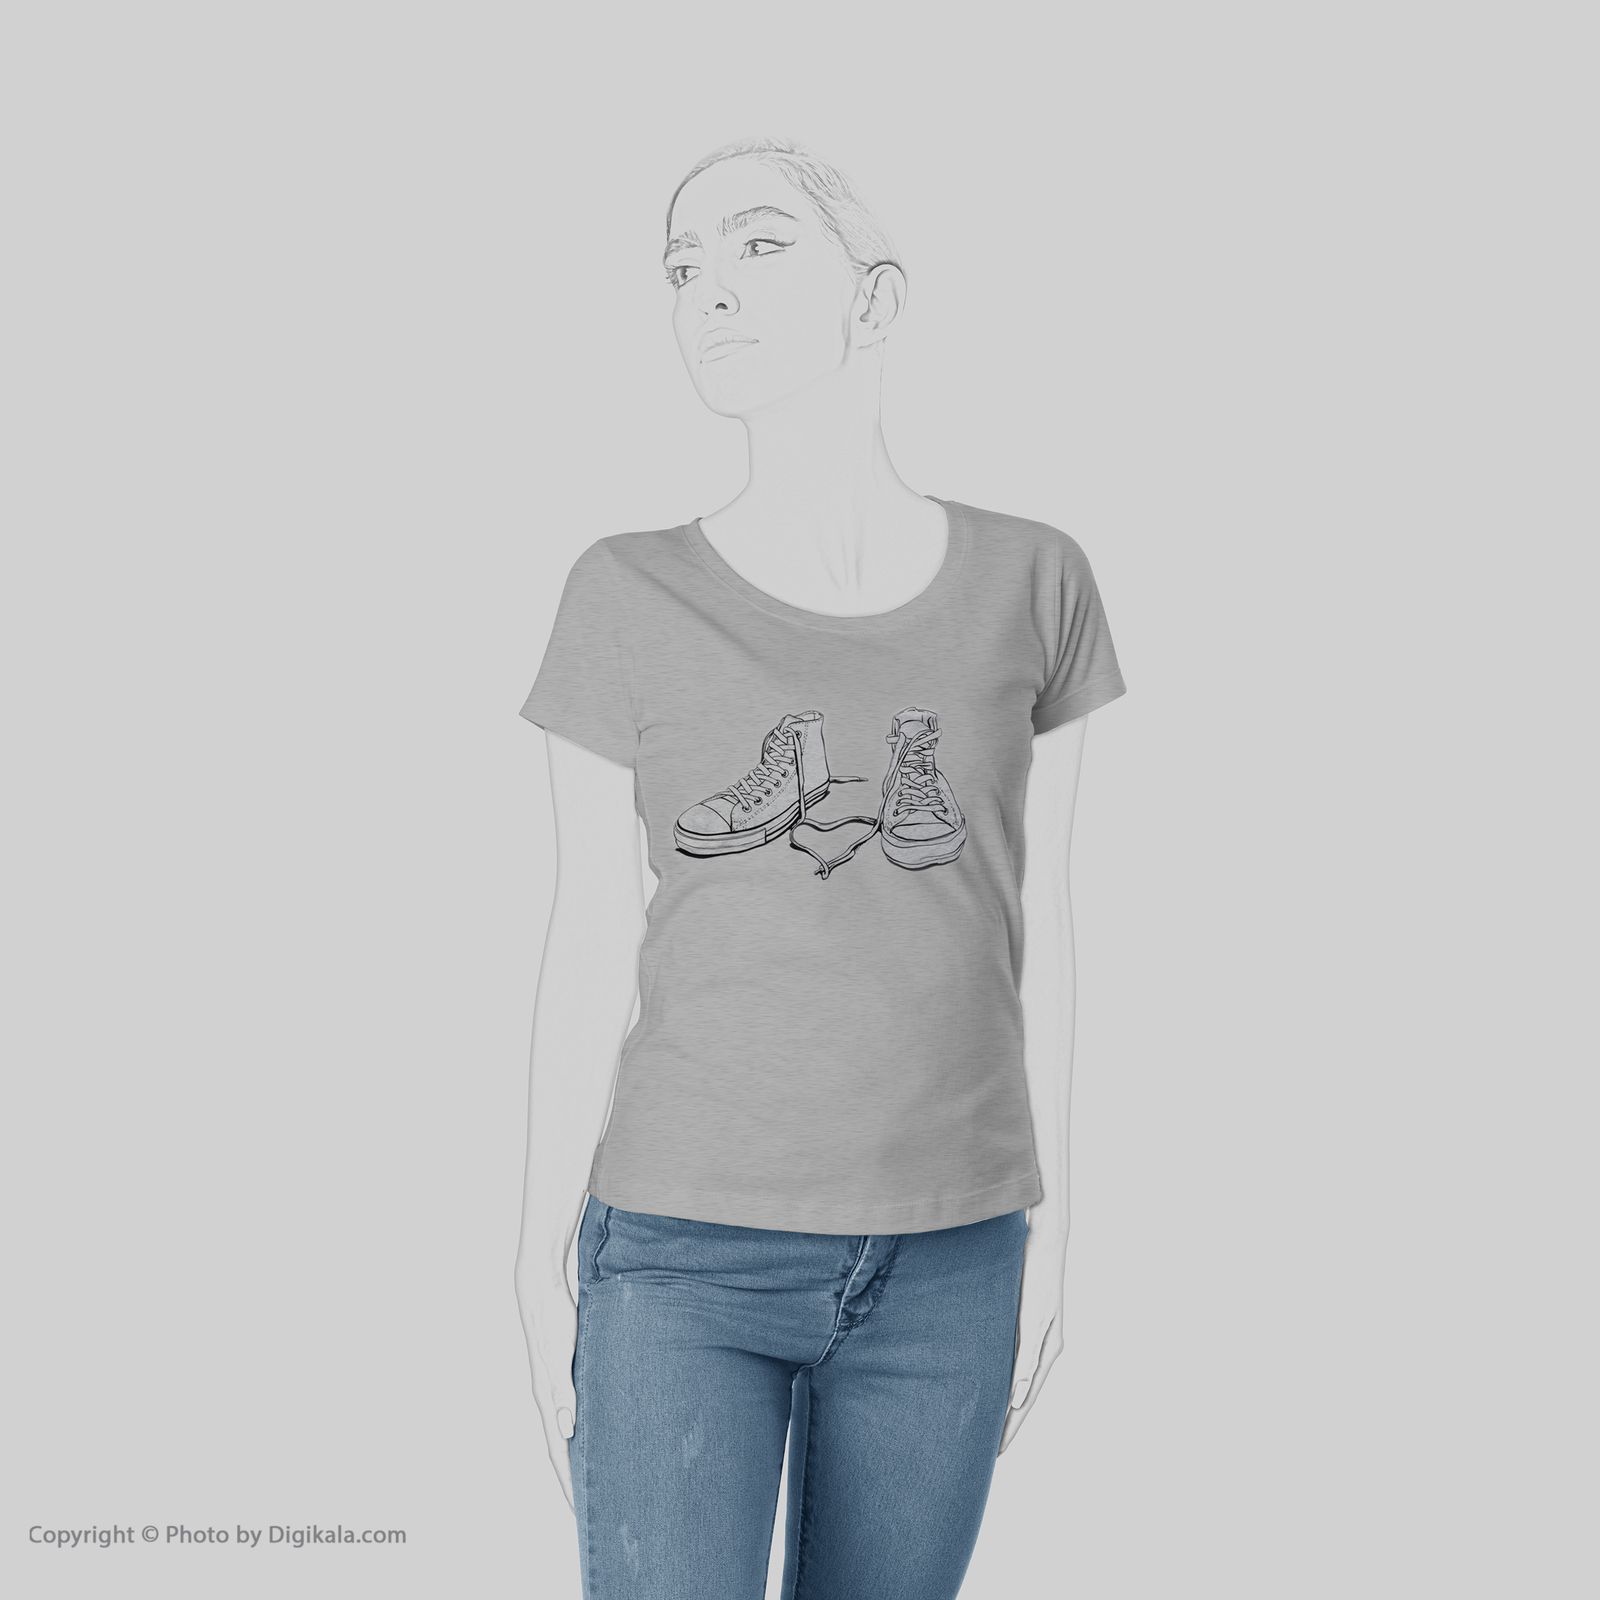 تی شرت زنانه به رسم کد 4422 -  - 6